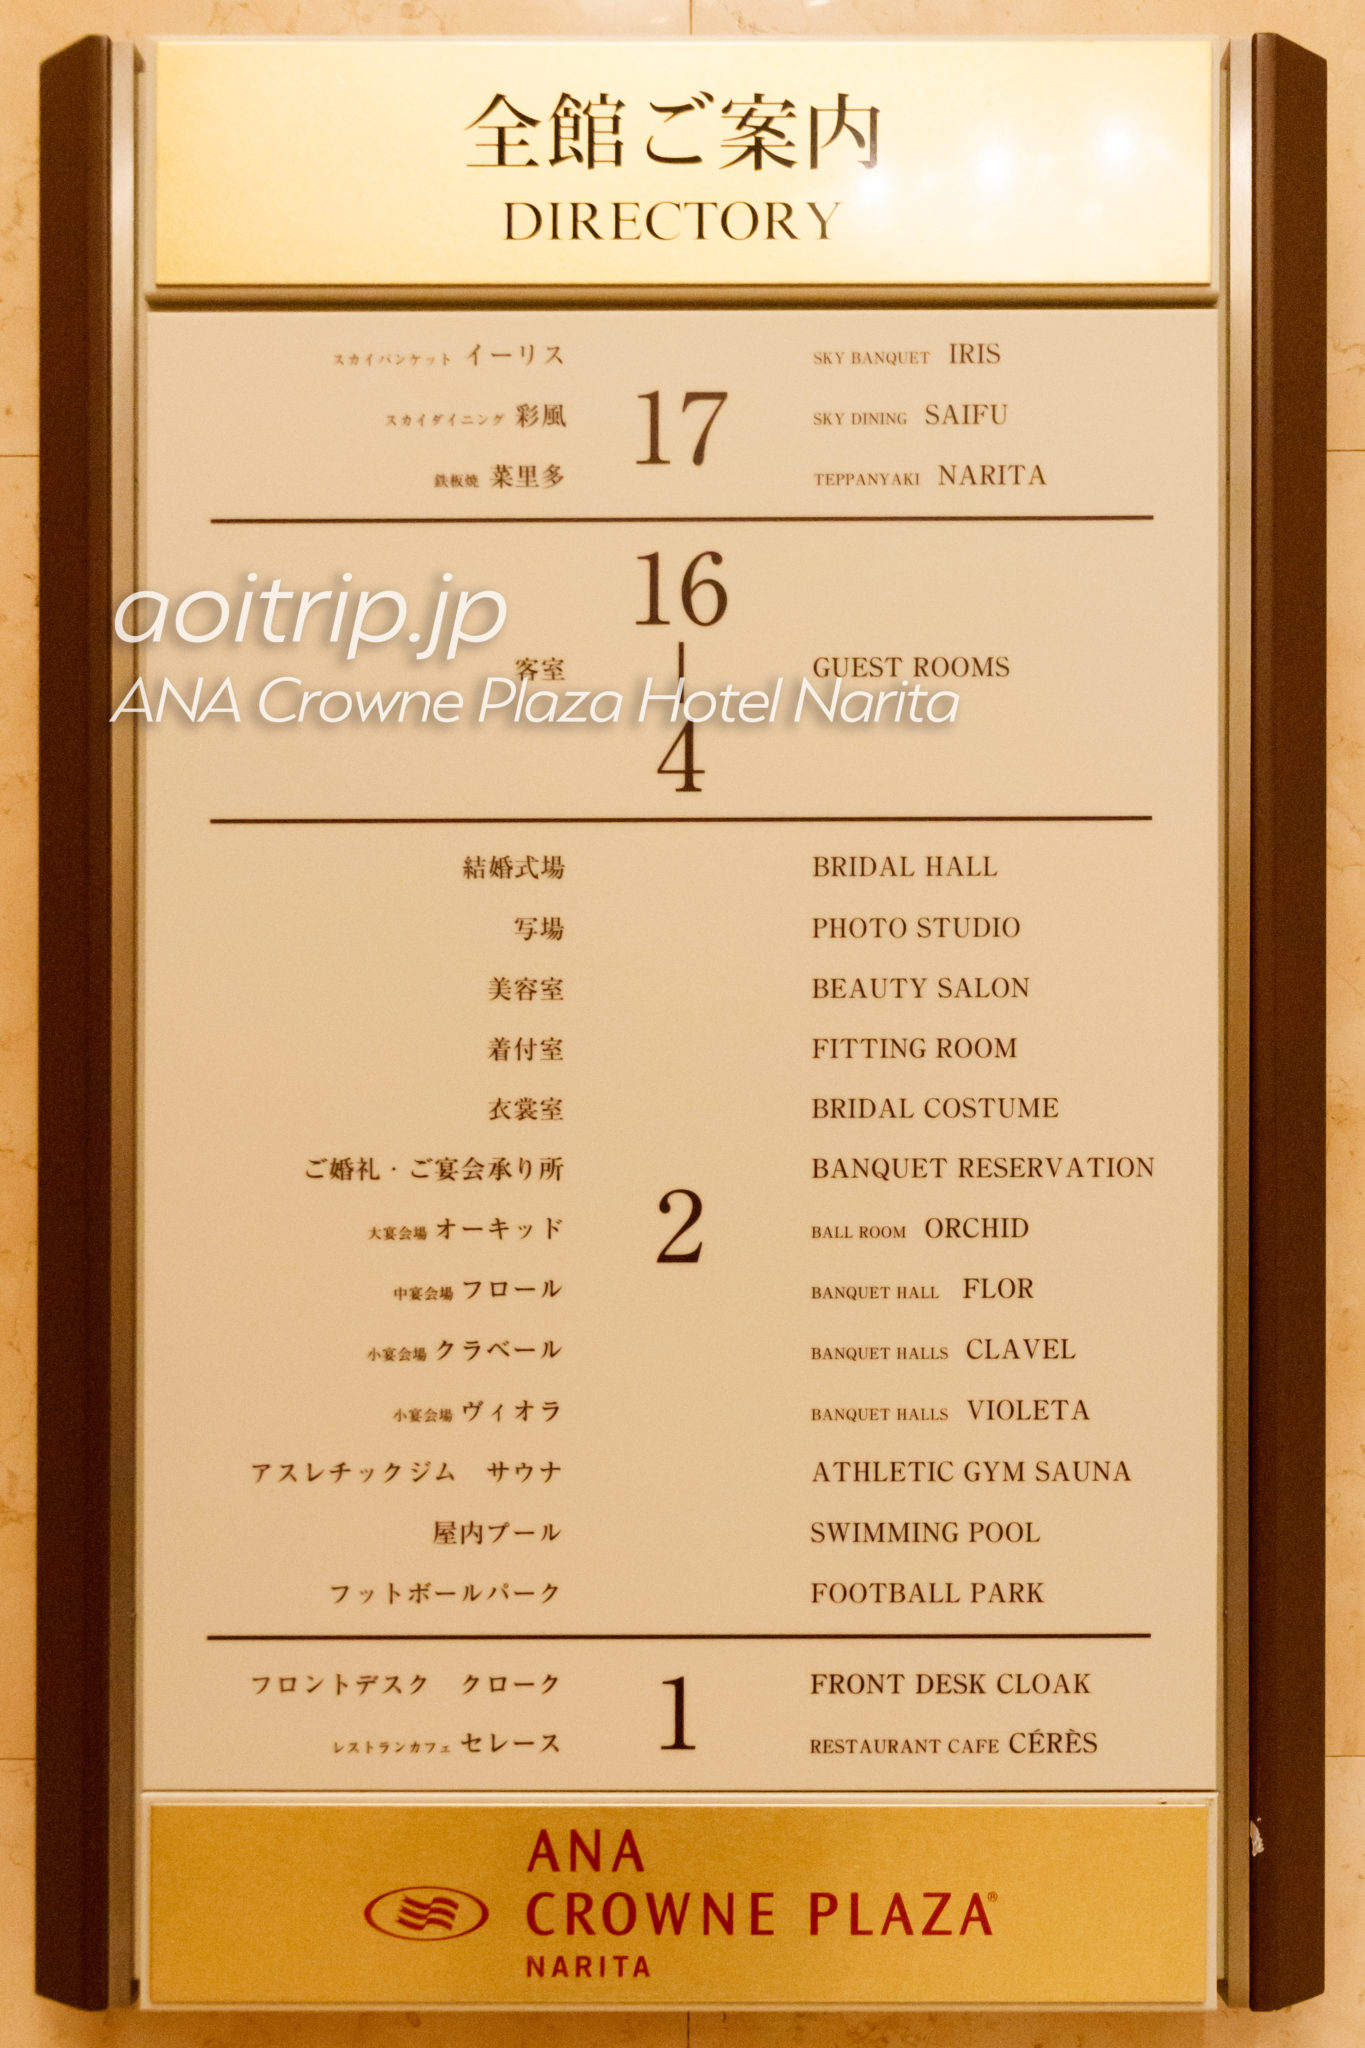 ANAクラウンプラザホテル成田の施設一覧（※クリックで拡大します）